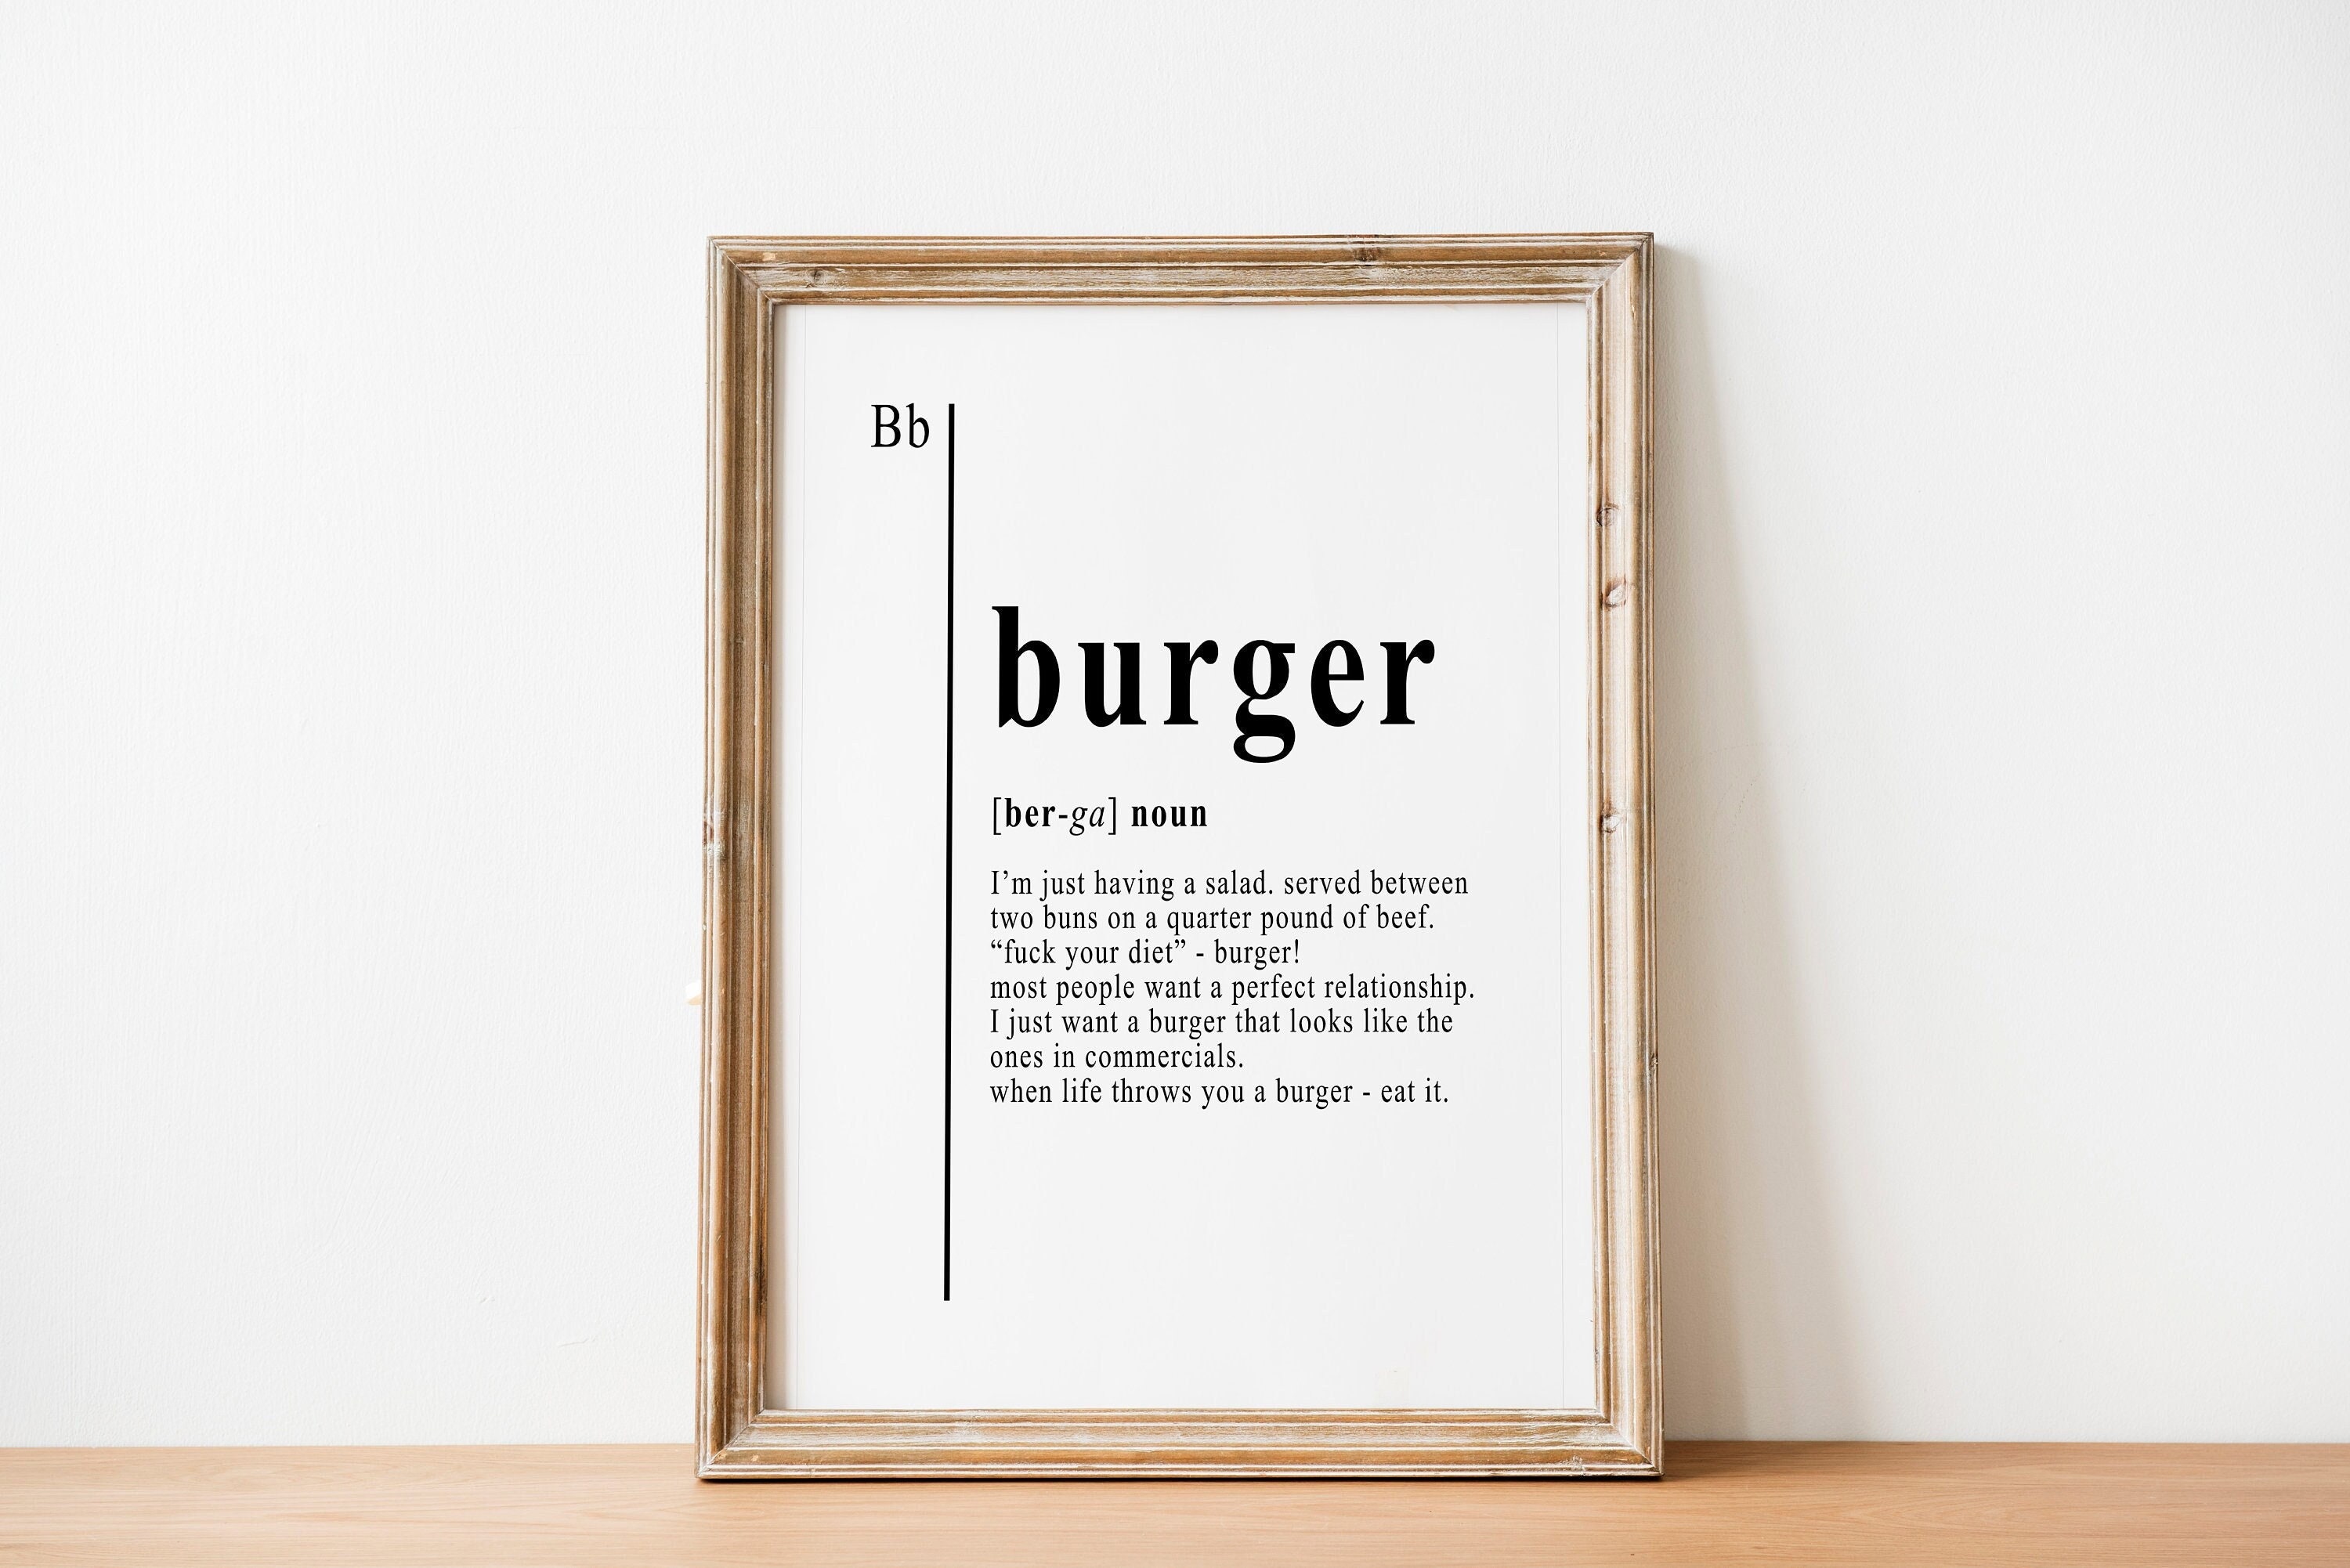 Burger urban dictionary